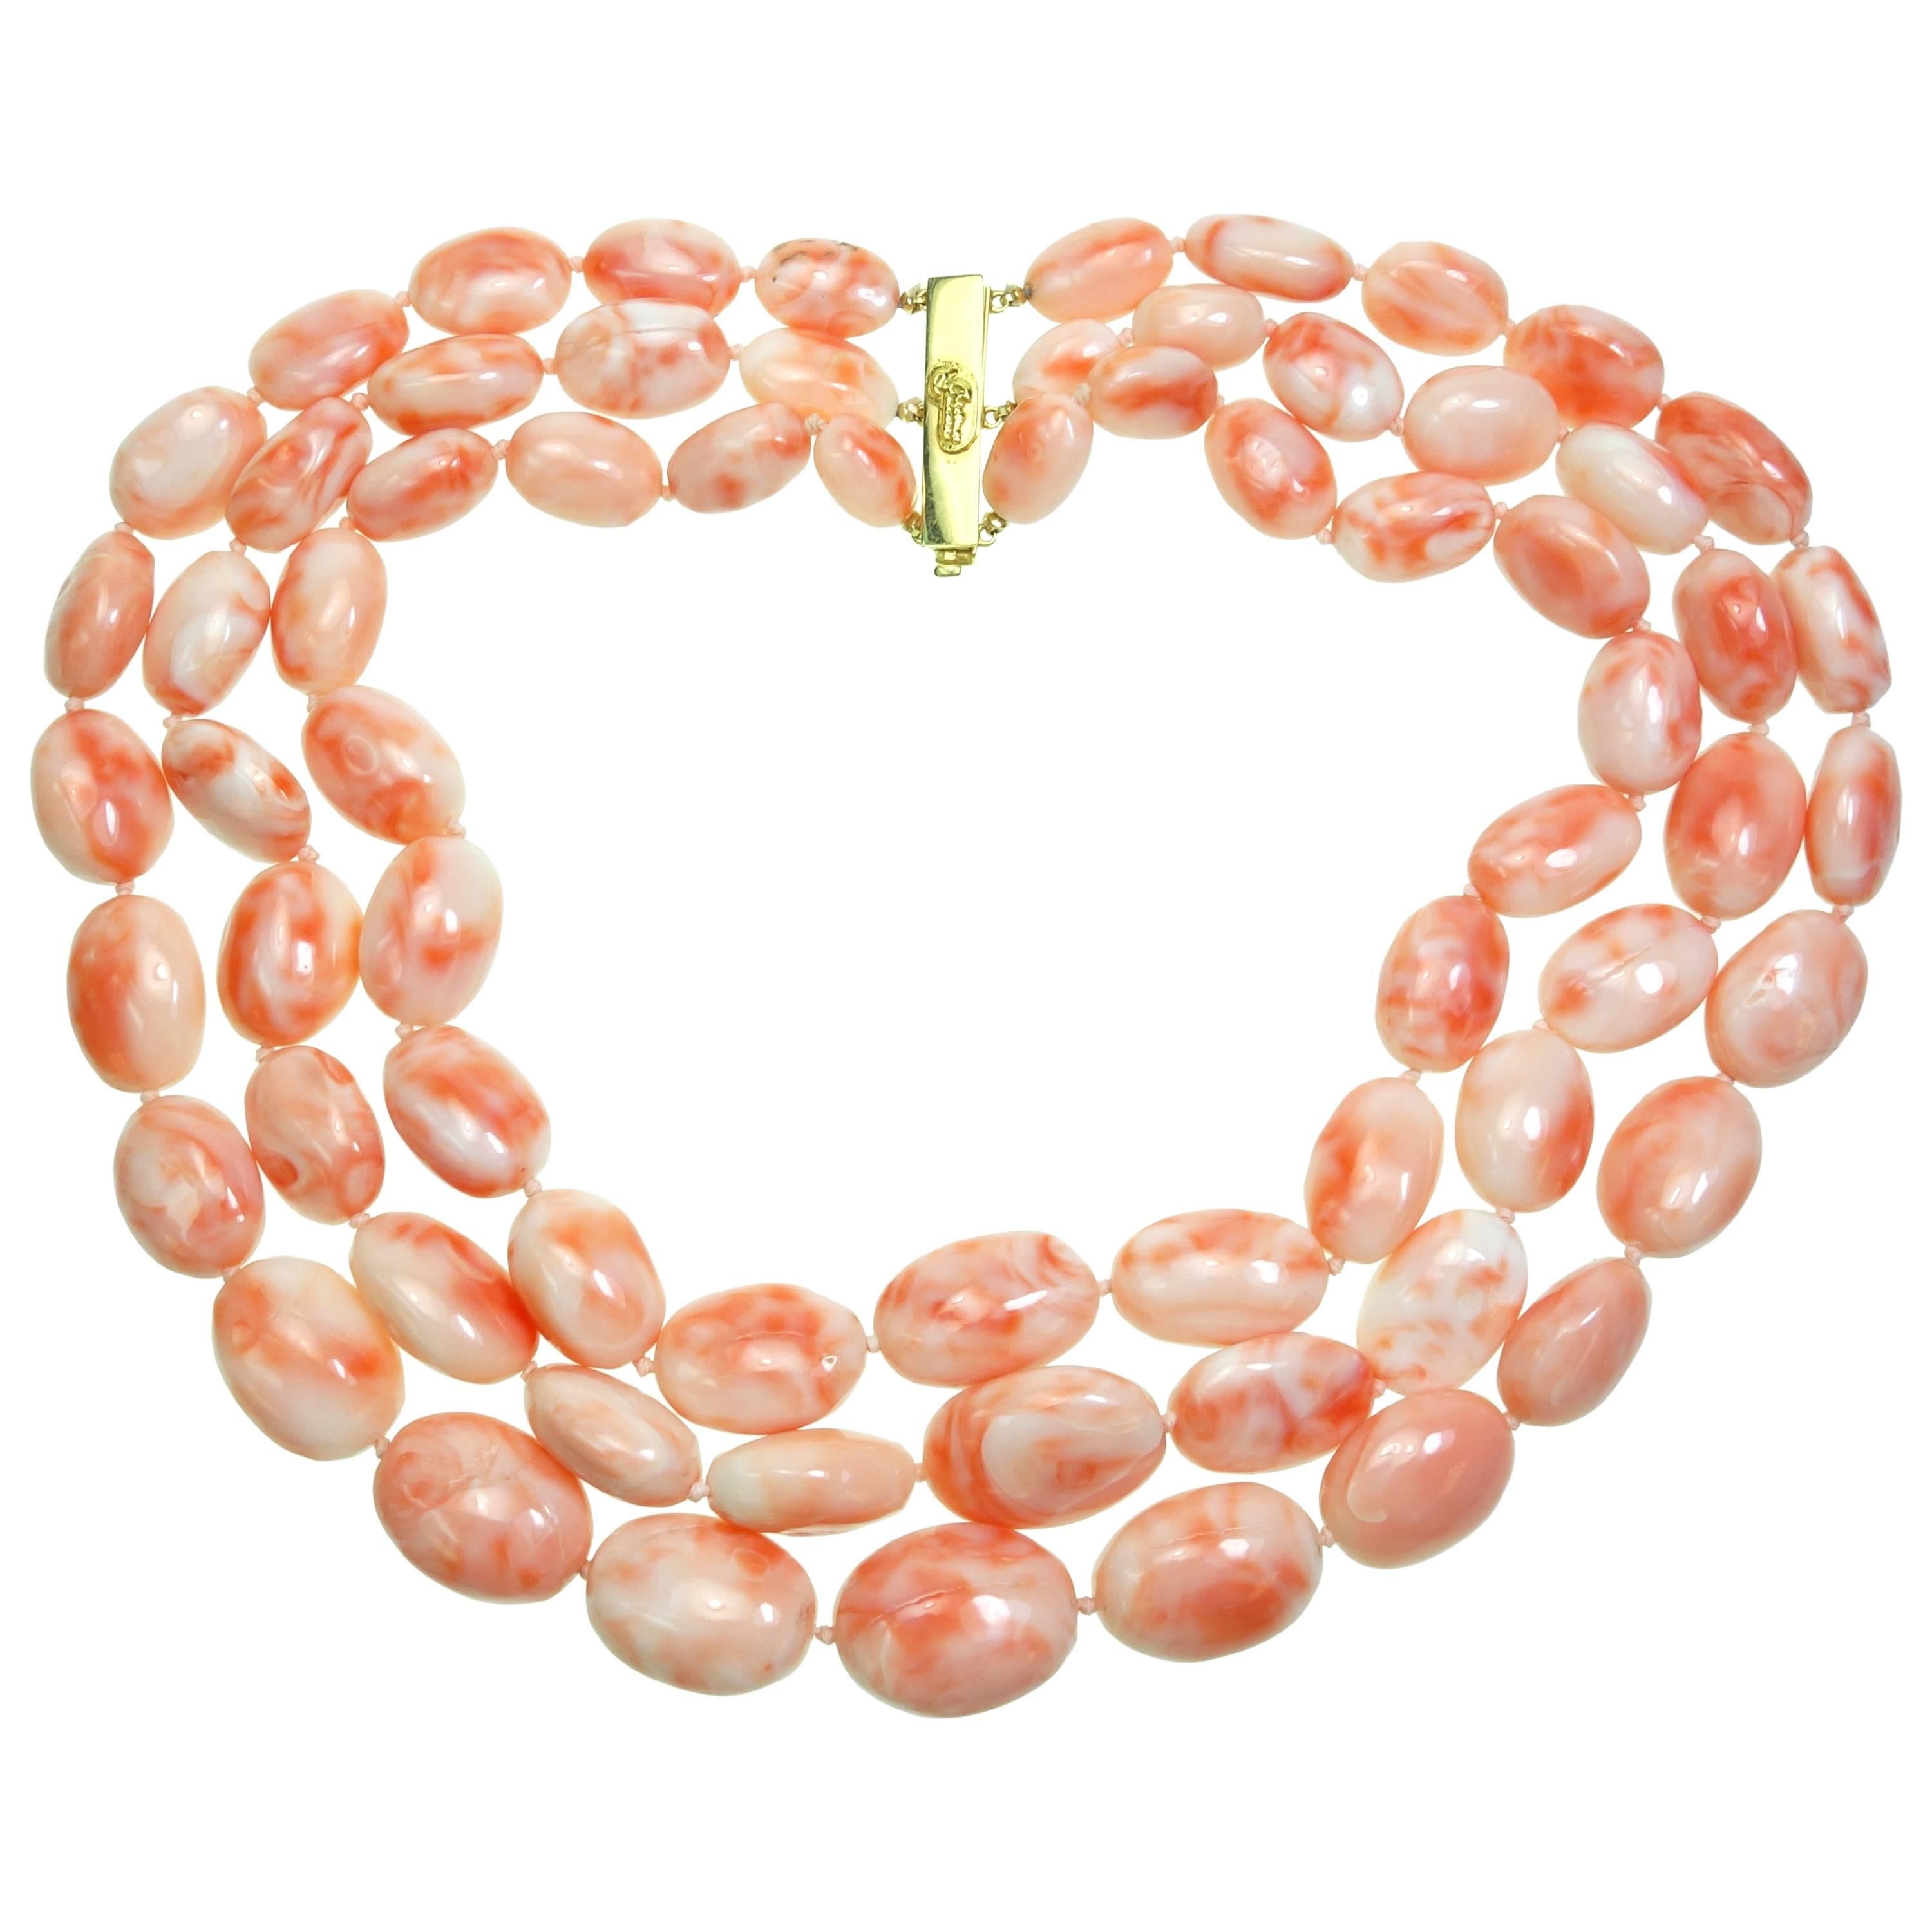 Cristina Ferrare Triple Strand Salmon Coral Beads Necklace For Sale